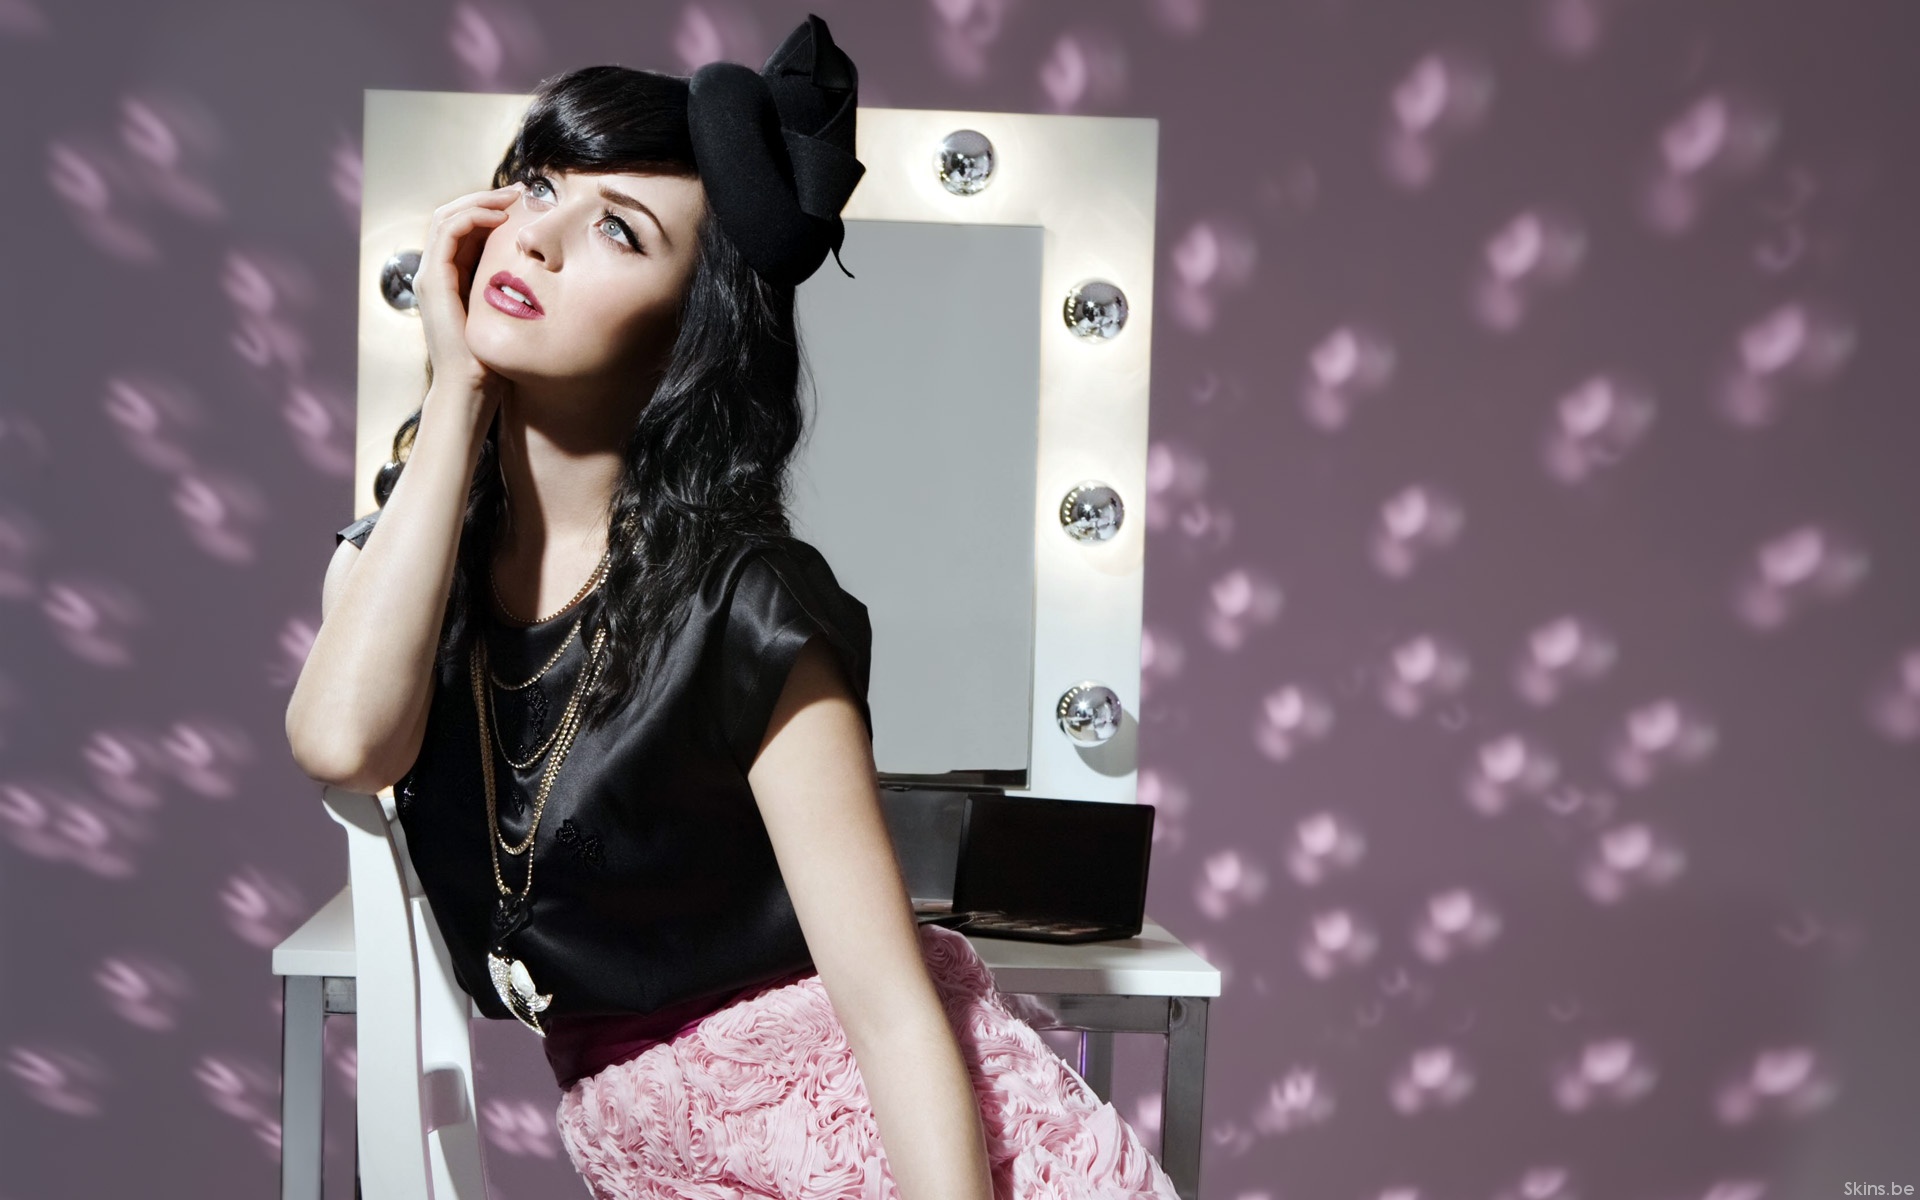 brunettes, women, Katy Perry, singers - desktop wallpaper